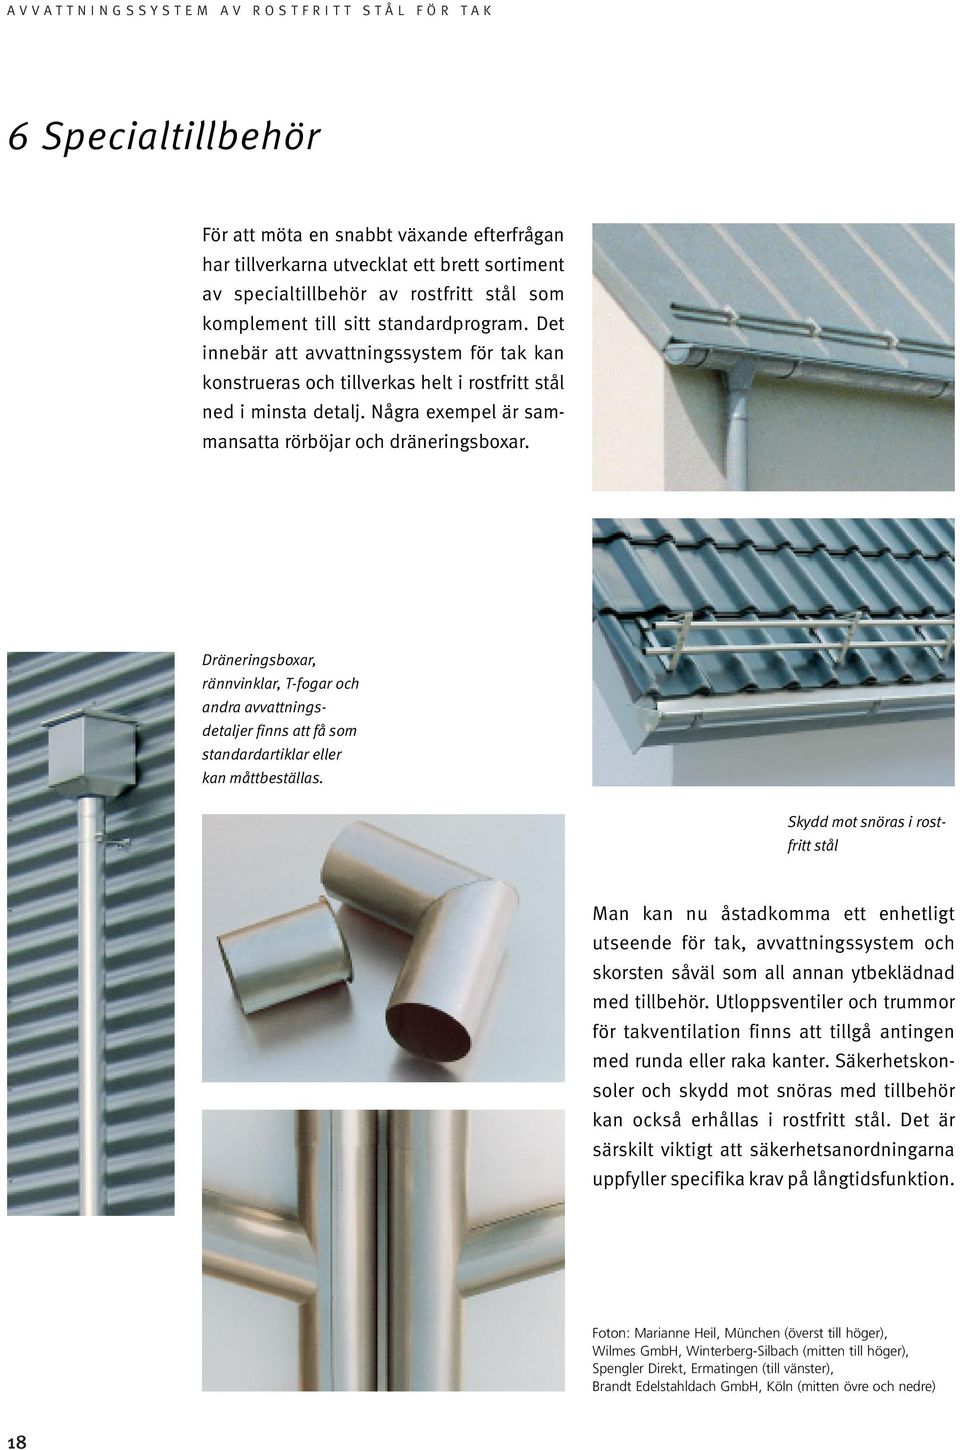 Avvattningssystem av rostfritt stål för tak - PDF Gratis nedladdning